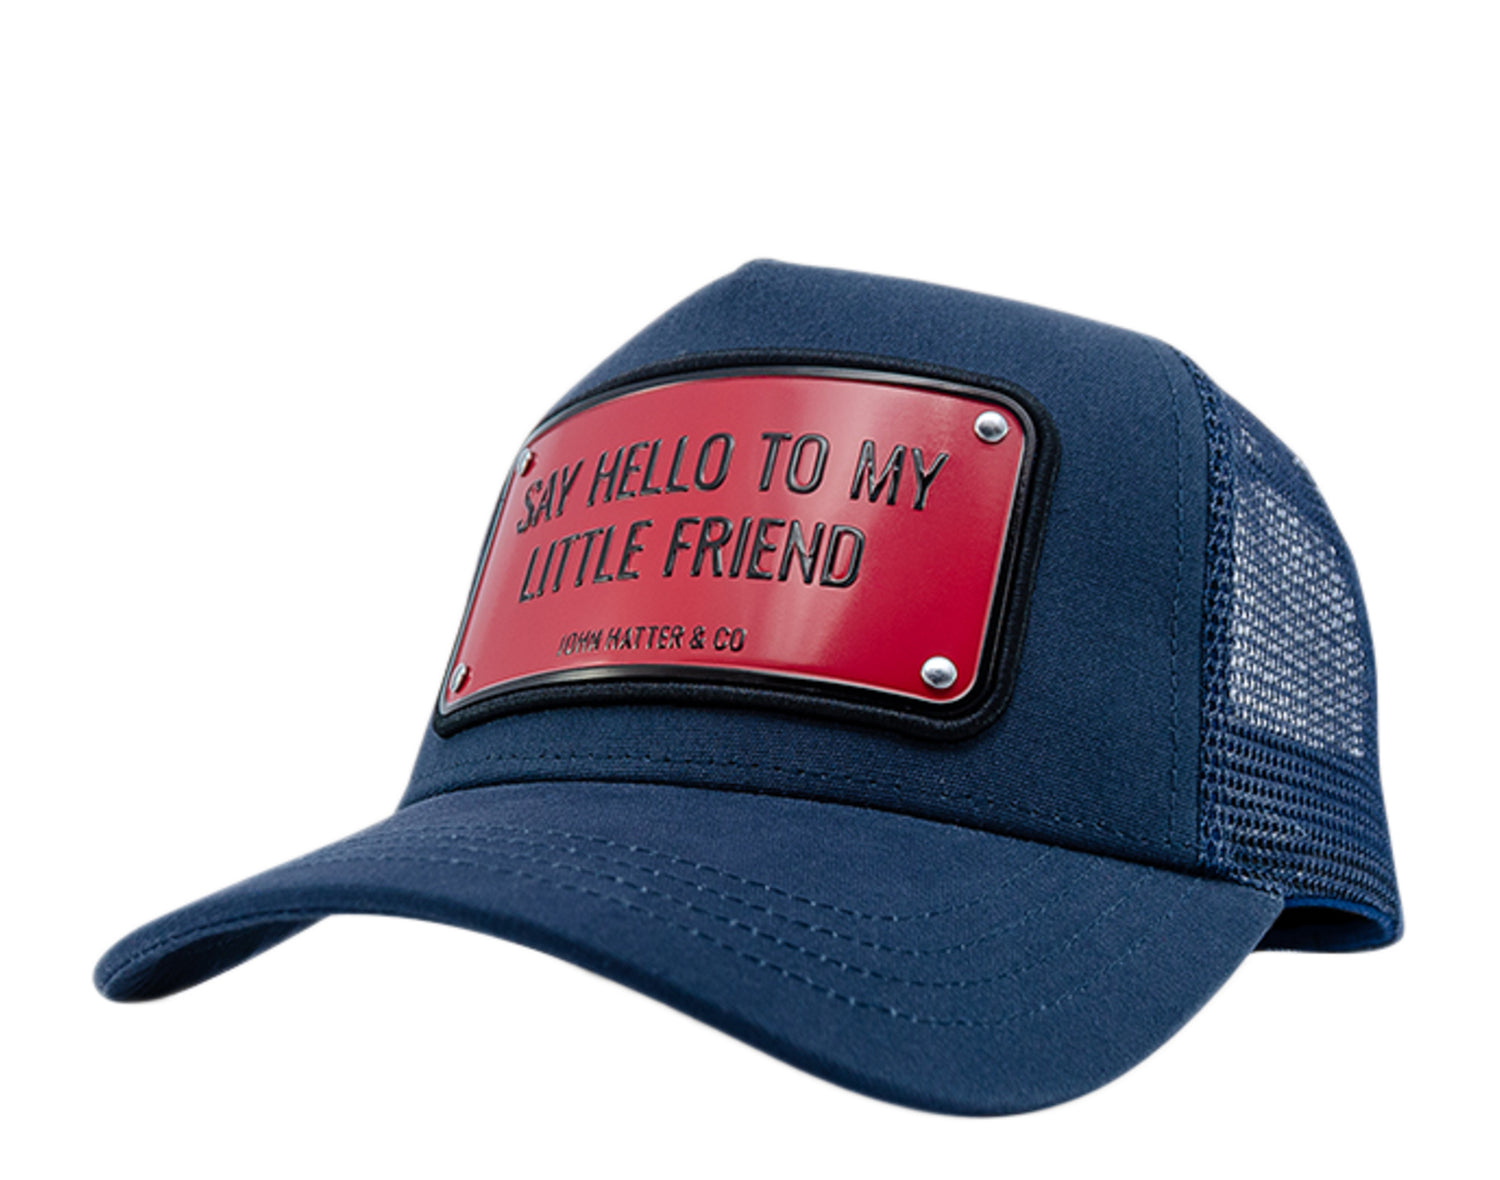 John Hatter & Co Say Hello To My Little Friend Trucker Hat